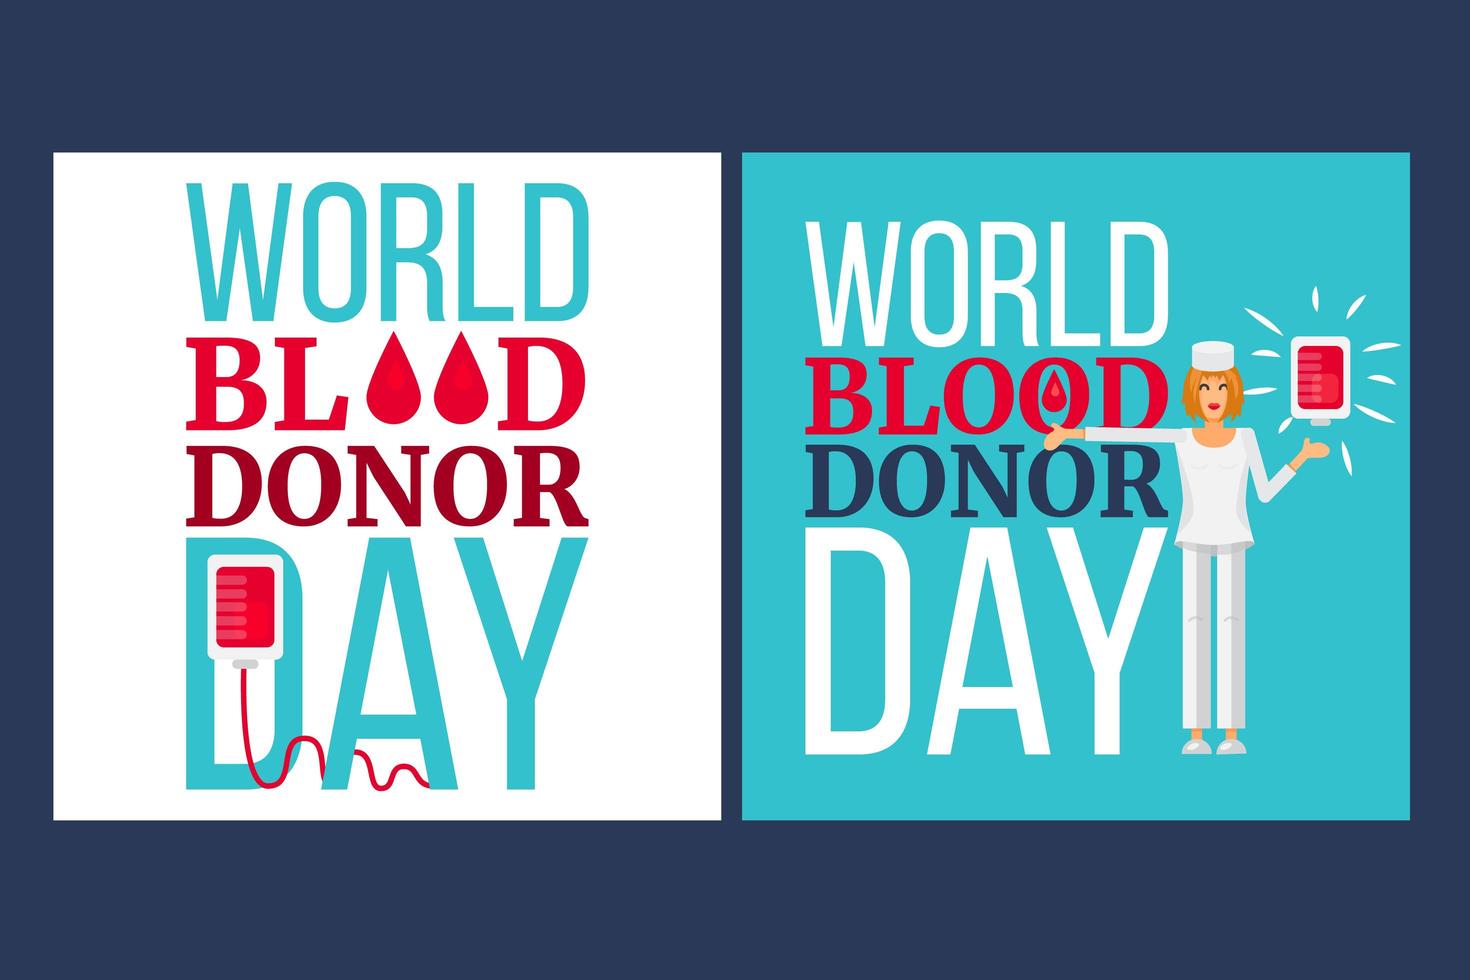 dia mundial do doador de sangue vetor